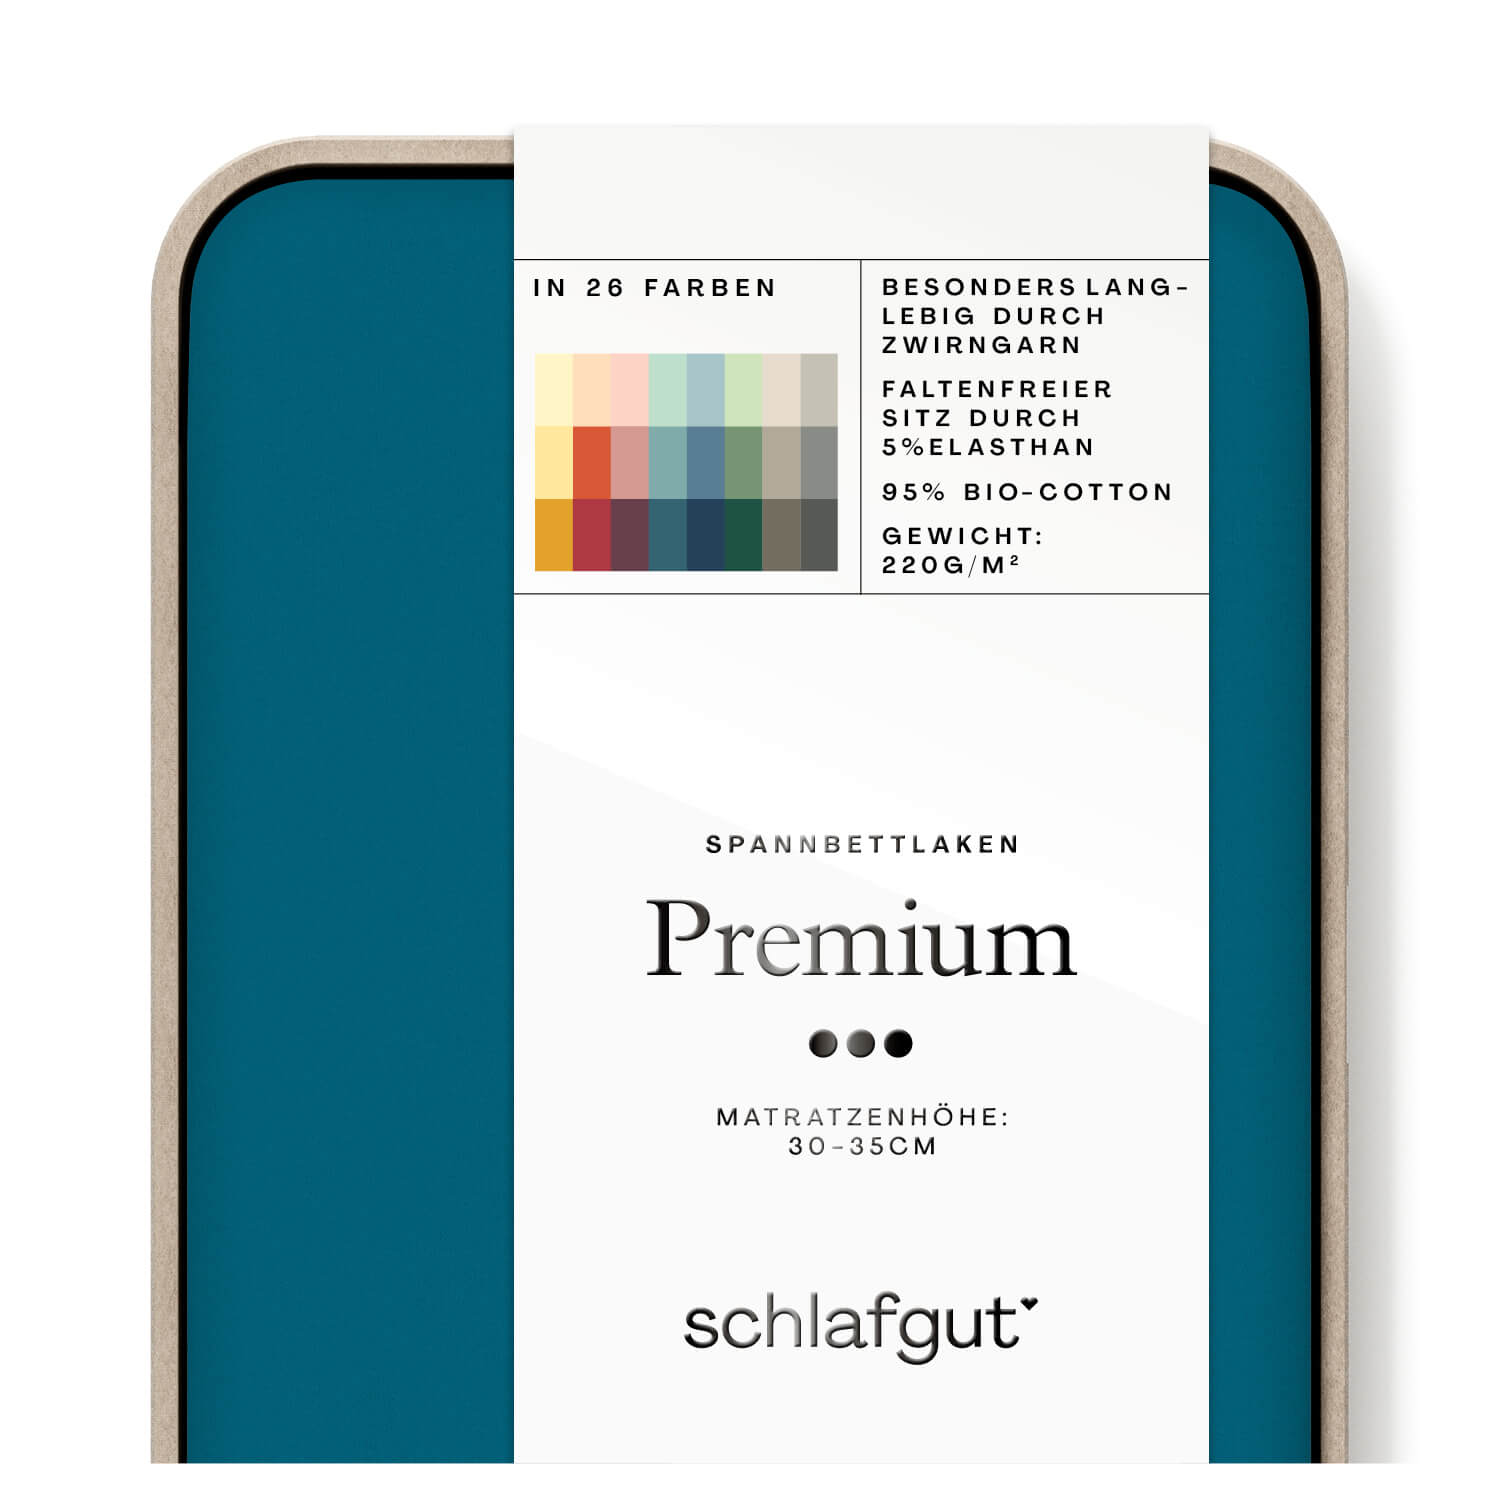 Das Produktbild vom Spannbettlaken der Reihe Premium in Farbe petrol deep von Schlafgut